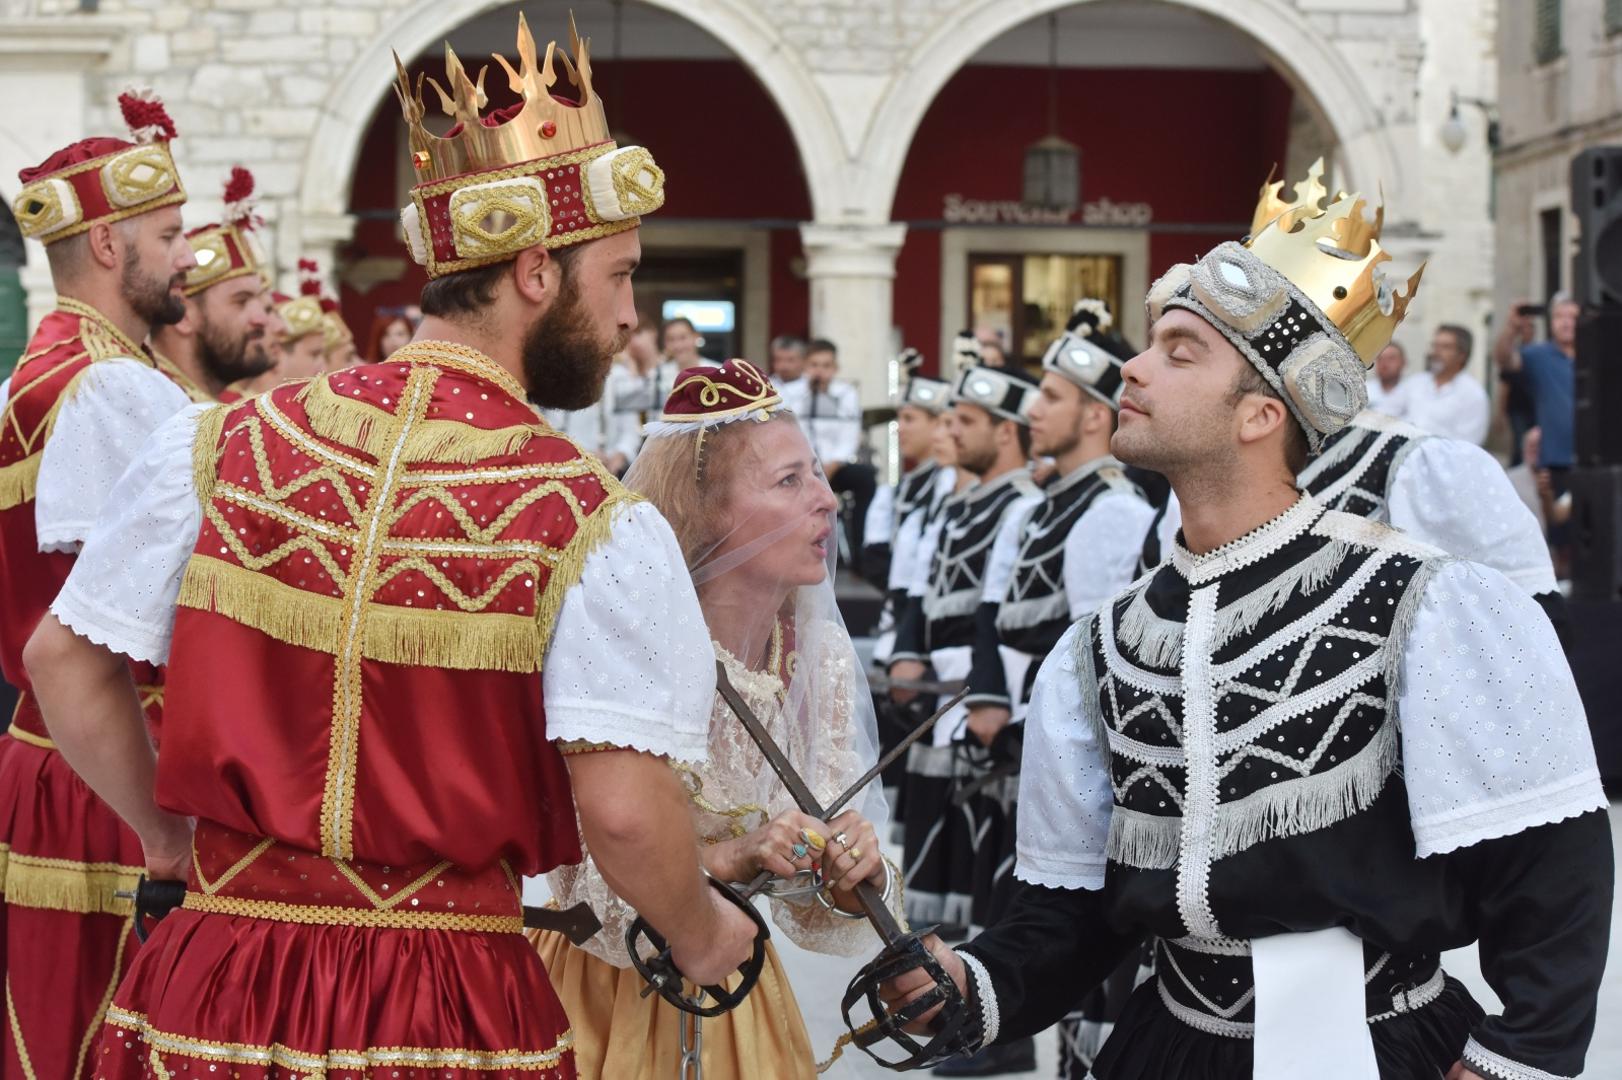 Posjetiteljima se u tri dana predstavlja više od 200 obrtnika i zanatlija iz Hrvatske i drugih europskih zemalja, kao i plesači Moreške s Korčule